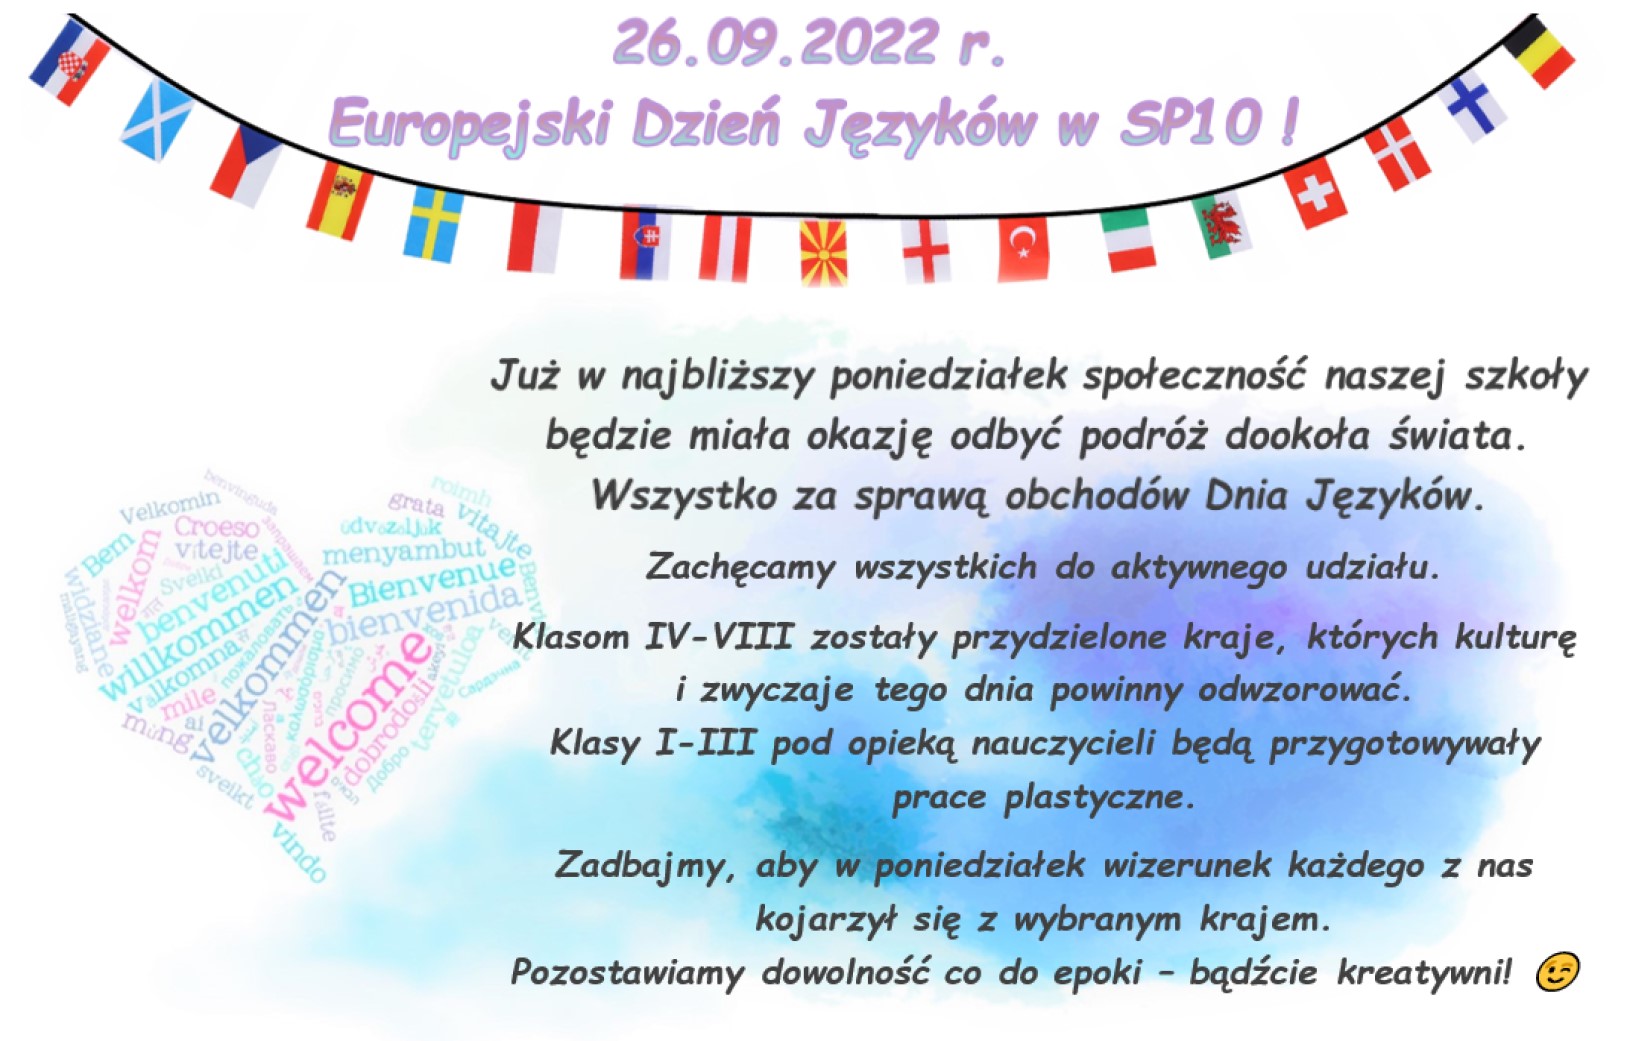 Plakat z zaproszeniem do udziału w Europejskim Dniu Języków - na akwarelowym tle z flagami państw w formie proporczyków.